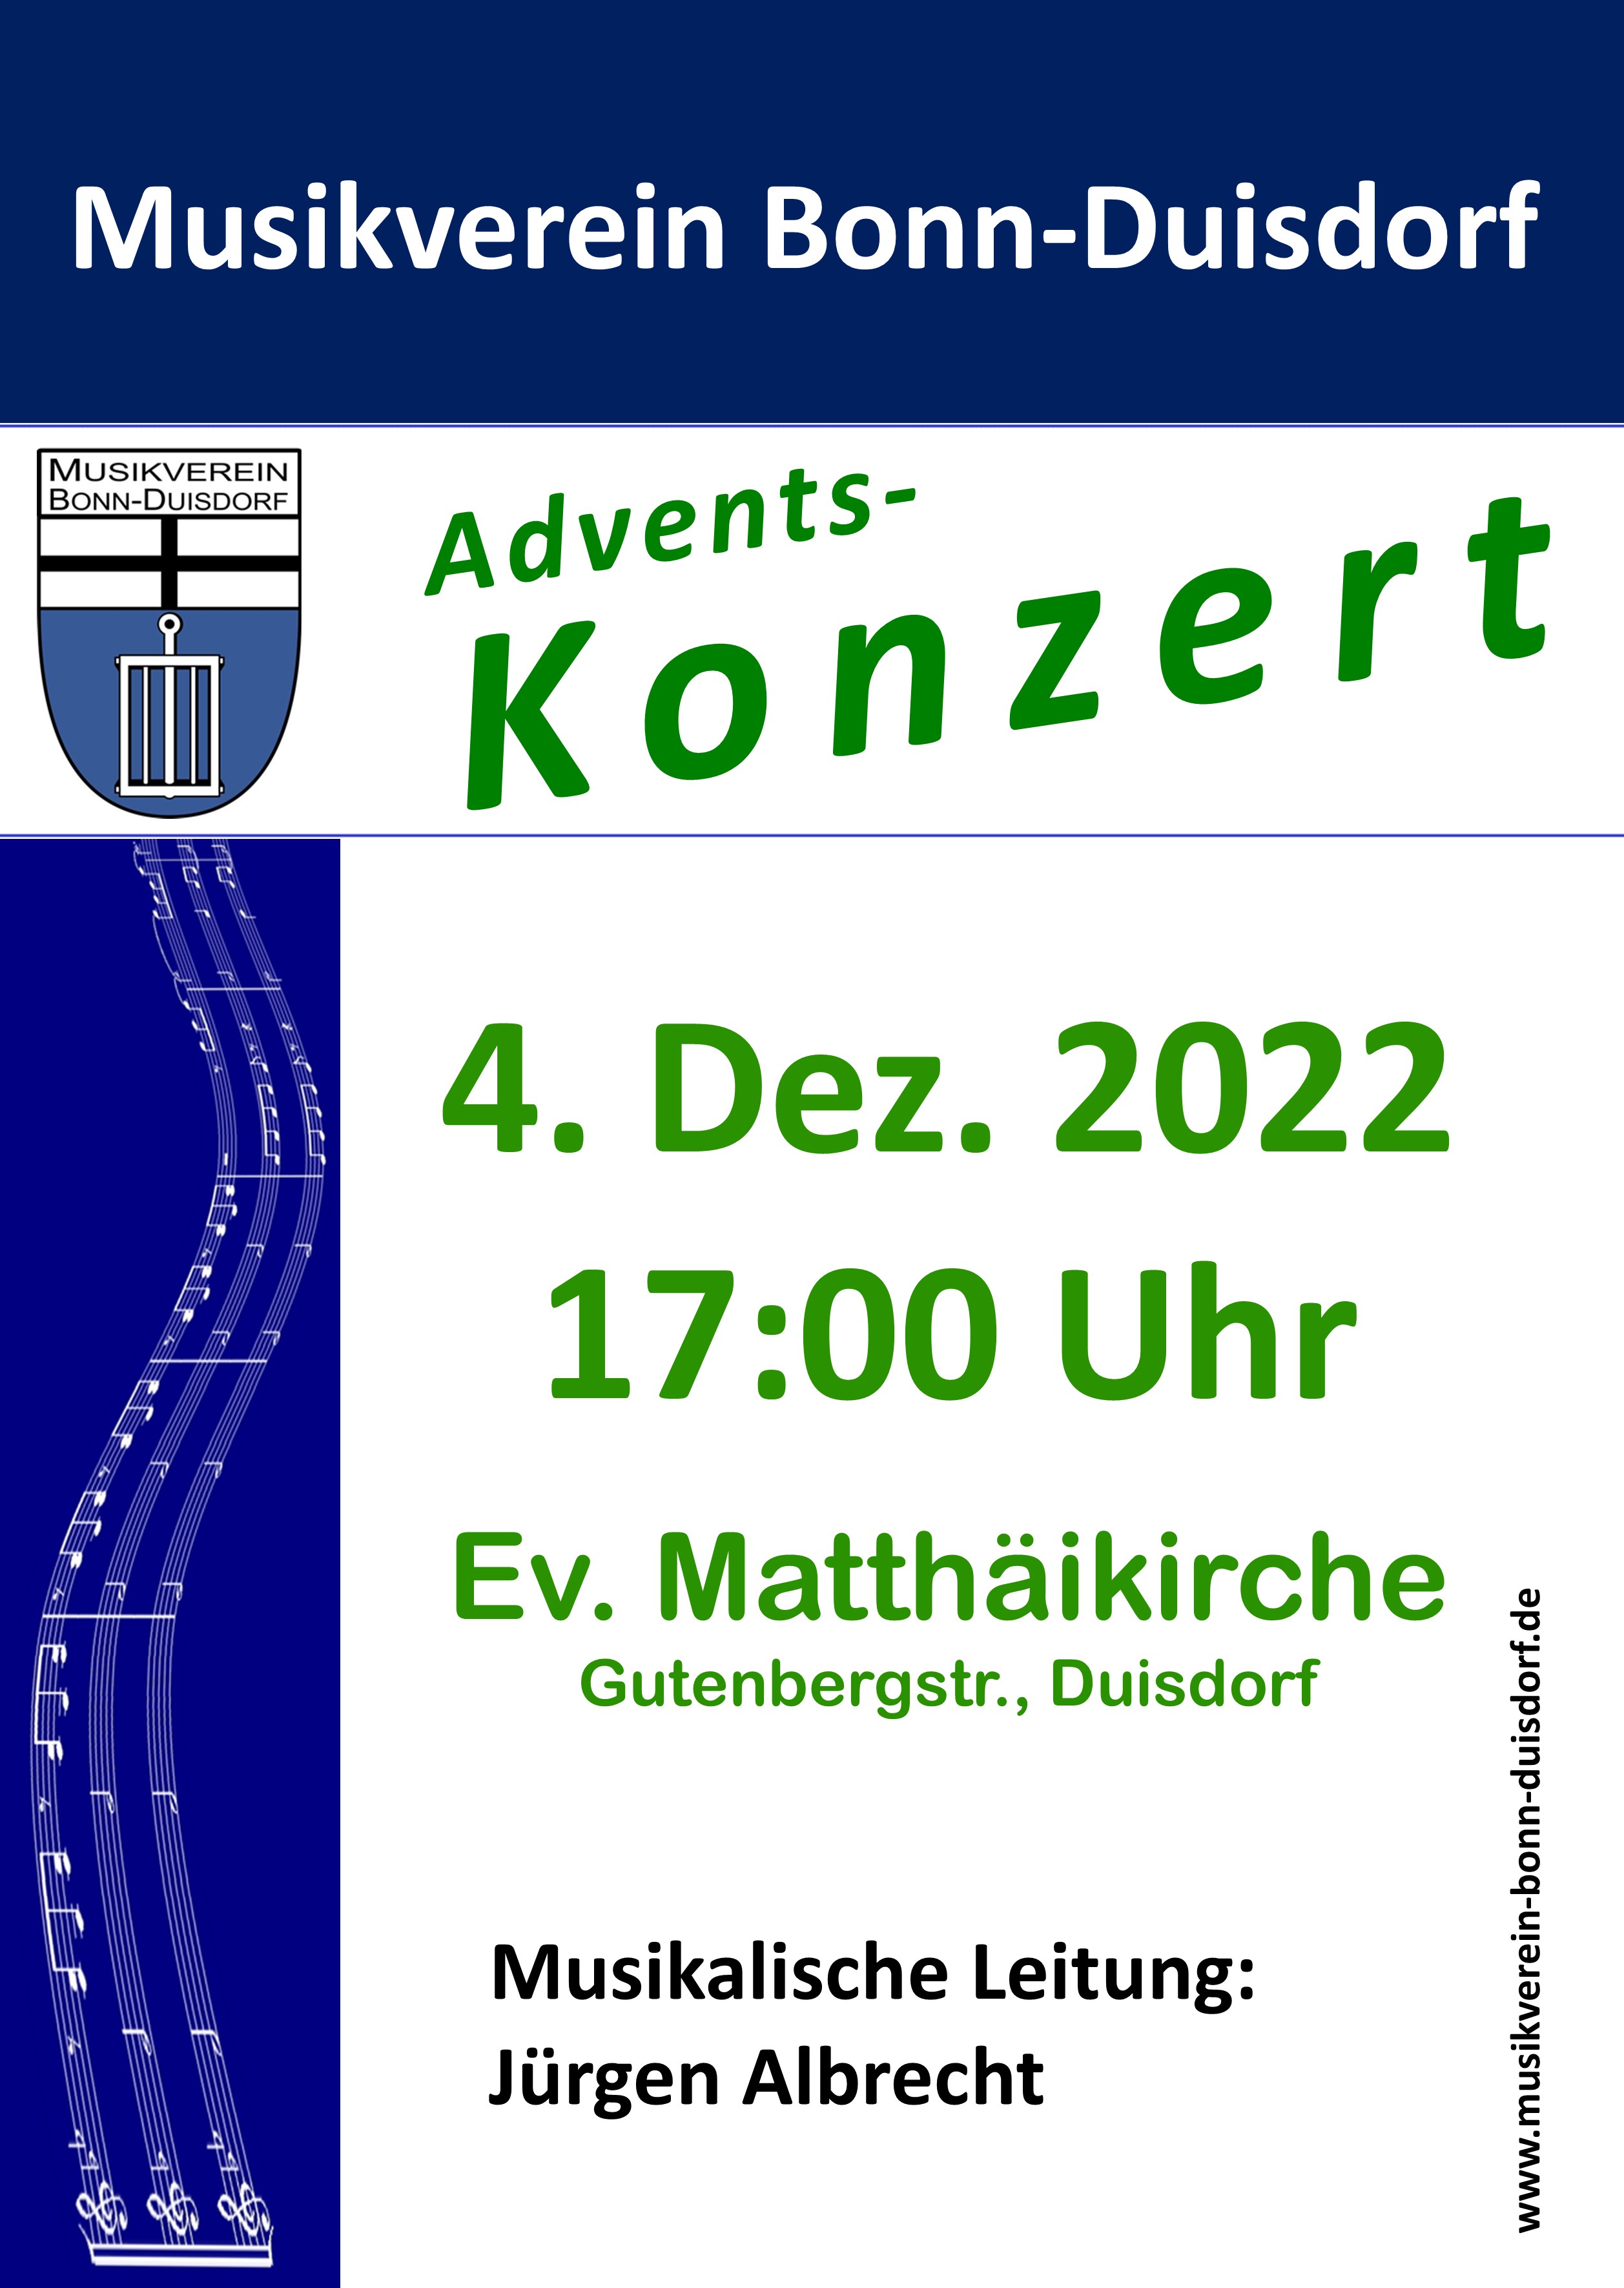 MVD_2022_AdventKonzert_Plakat